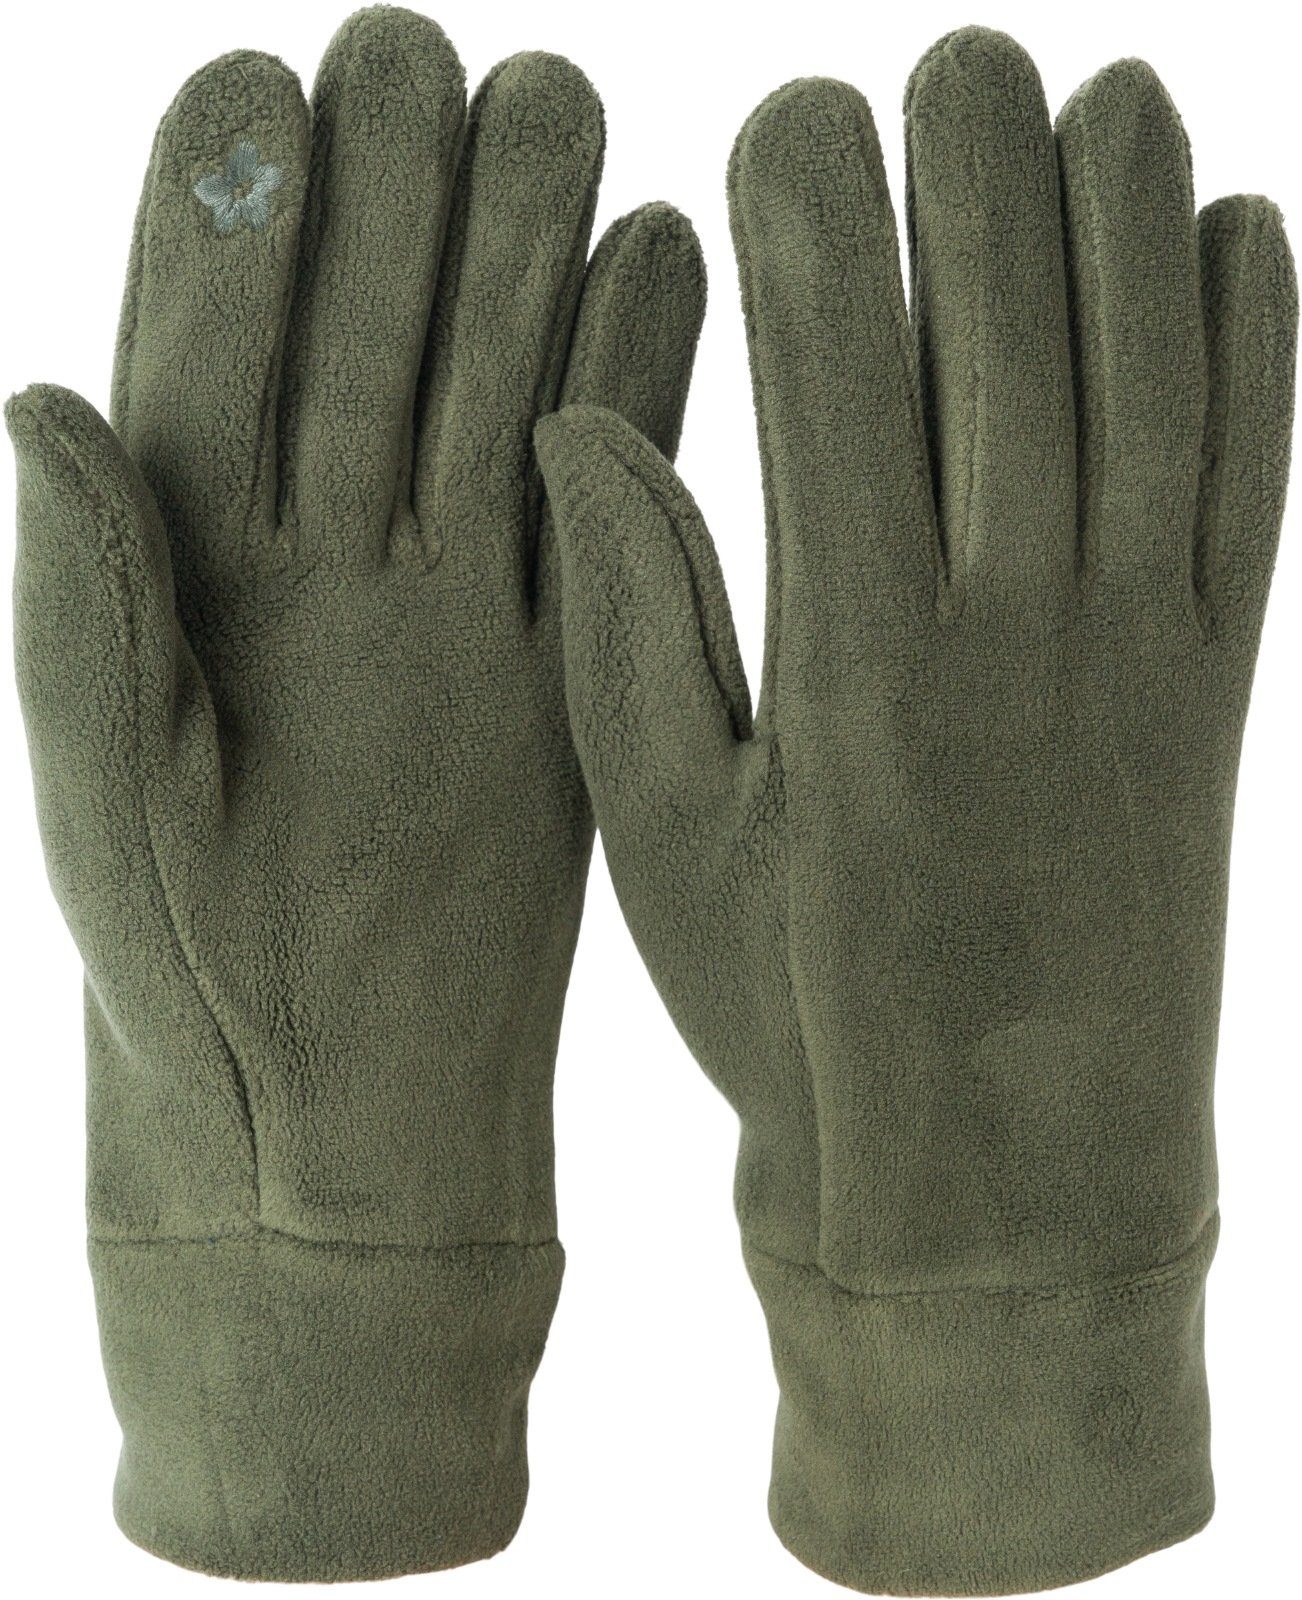 styleBREAKER Fleecehandschuhe Einfarbige Touchscreen Fleece Handschuhe Dunkeloliv | Fleecehandschuhe